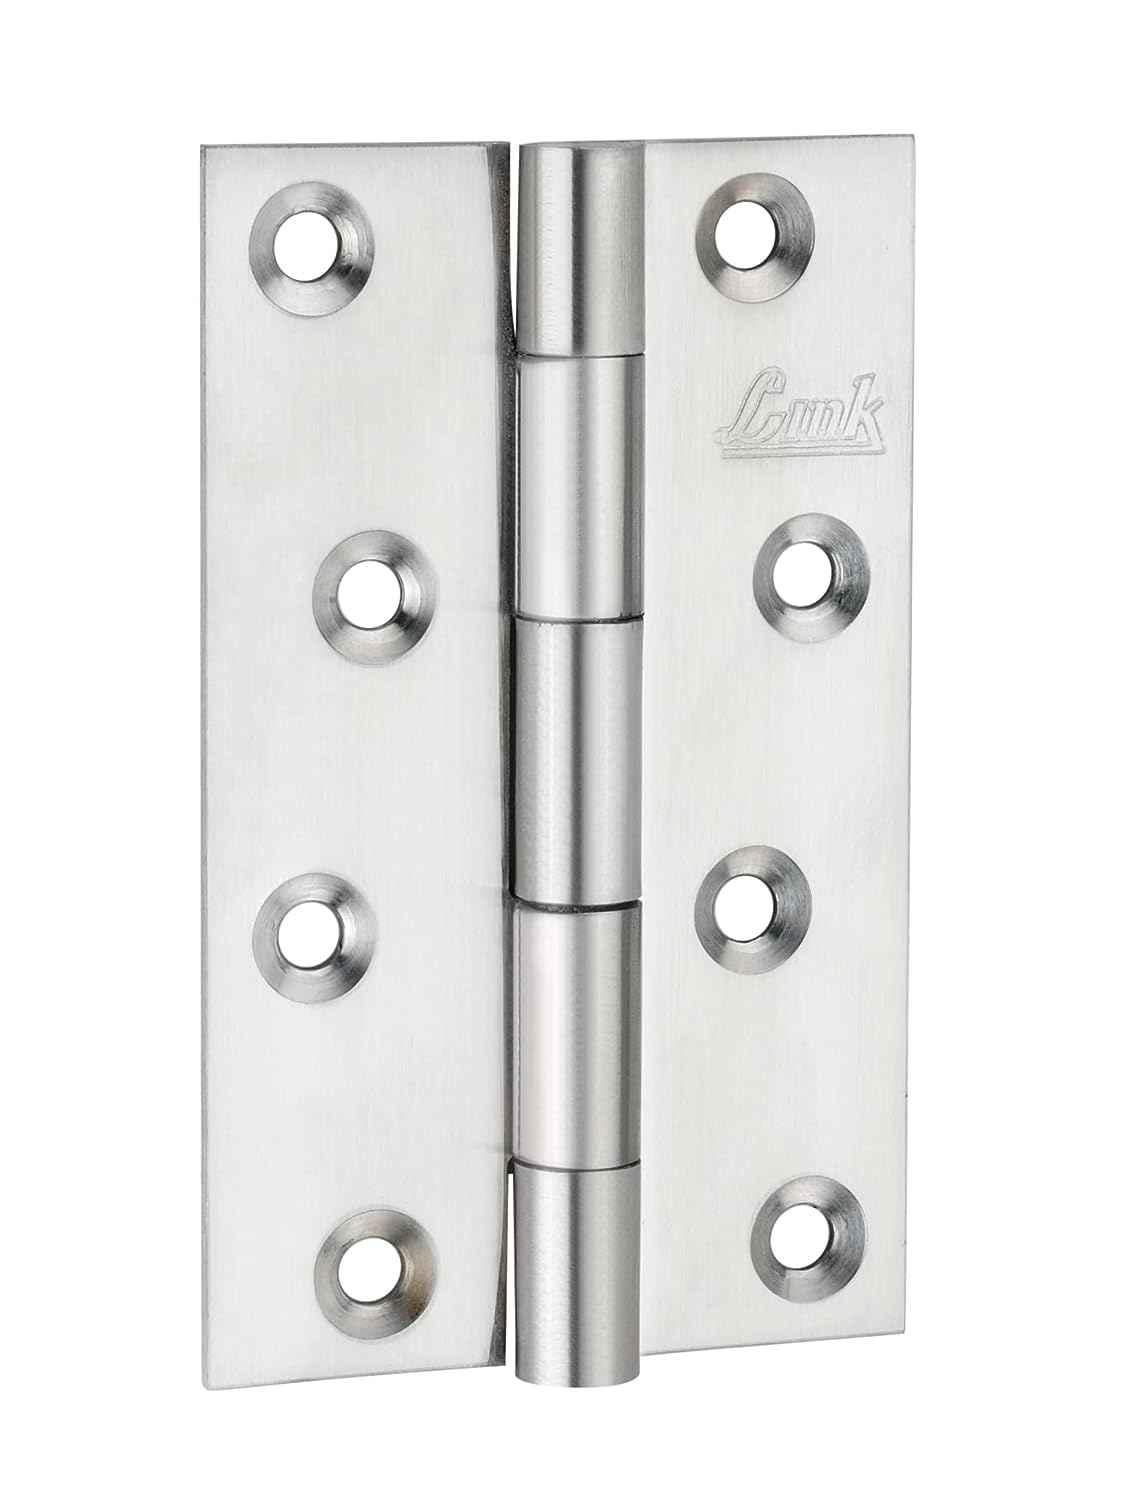 Buy Link 5 inch 12 Gauge Stainless Steel Matt Finish Door Butt Hinge Online  At Price ₹115